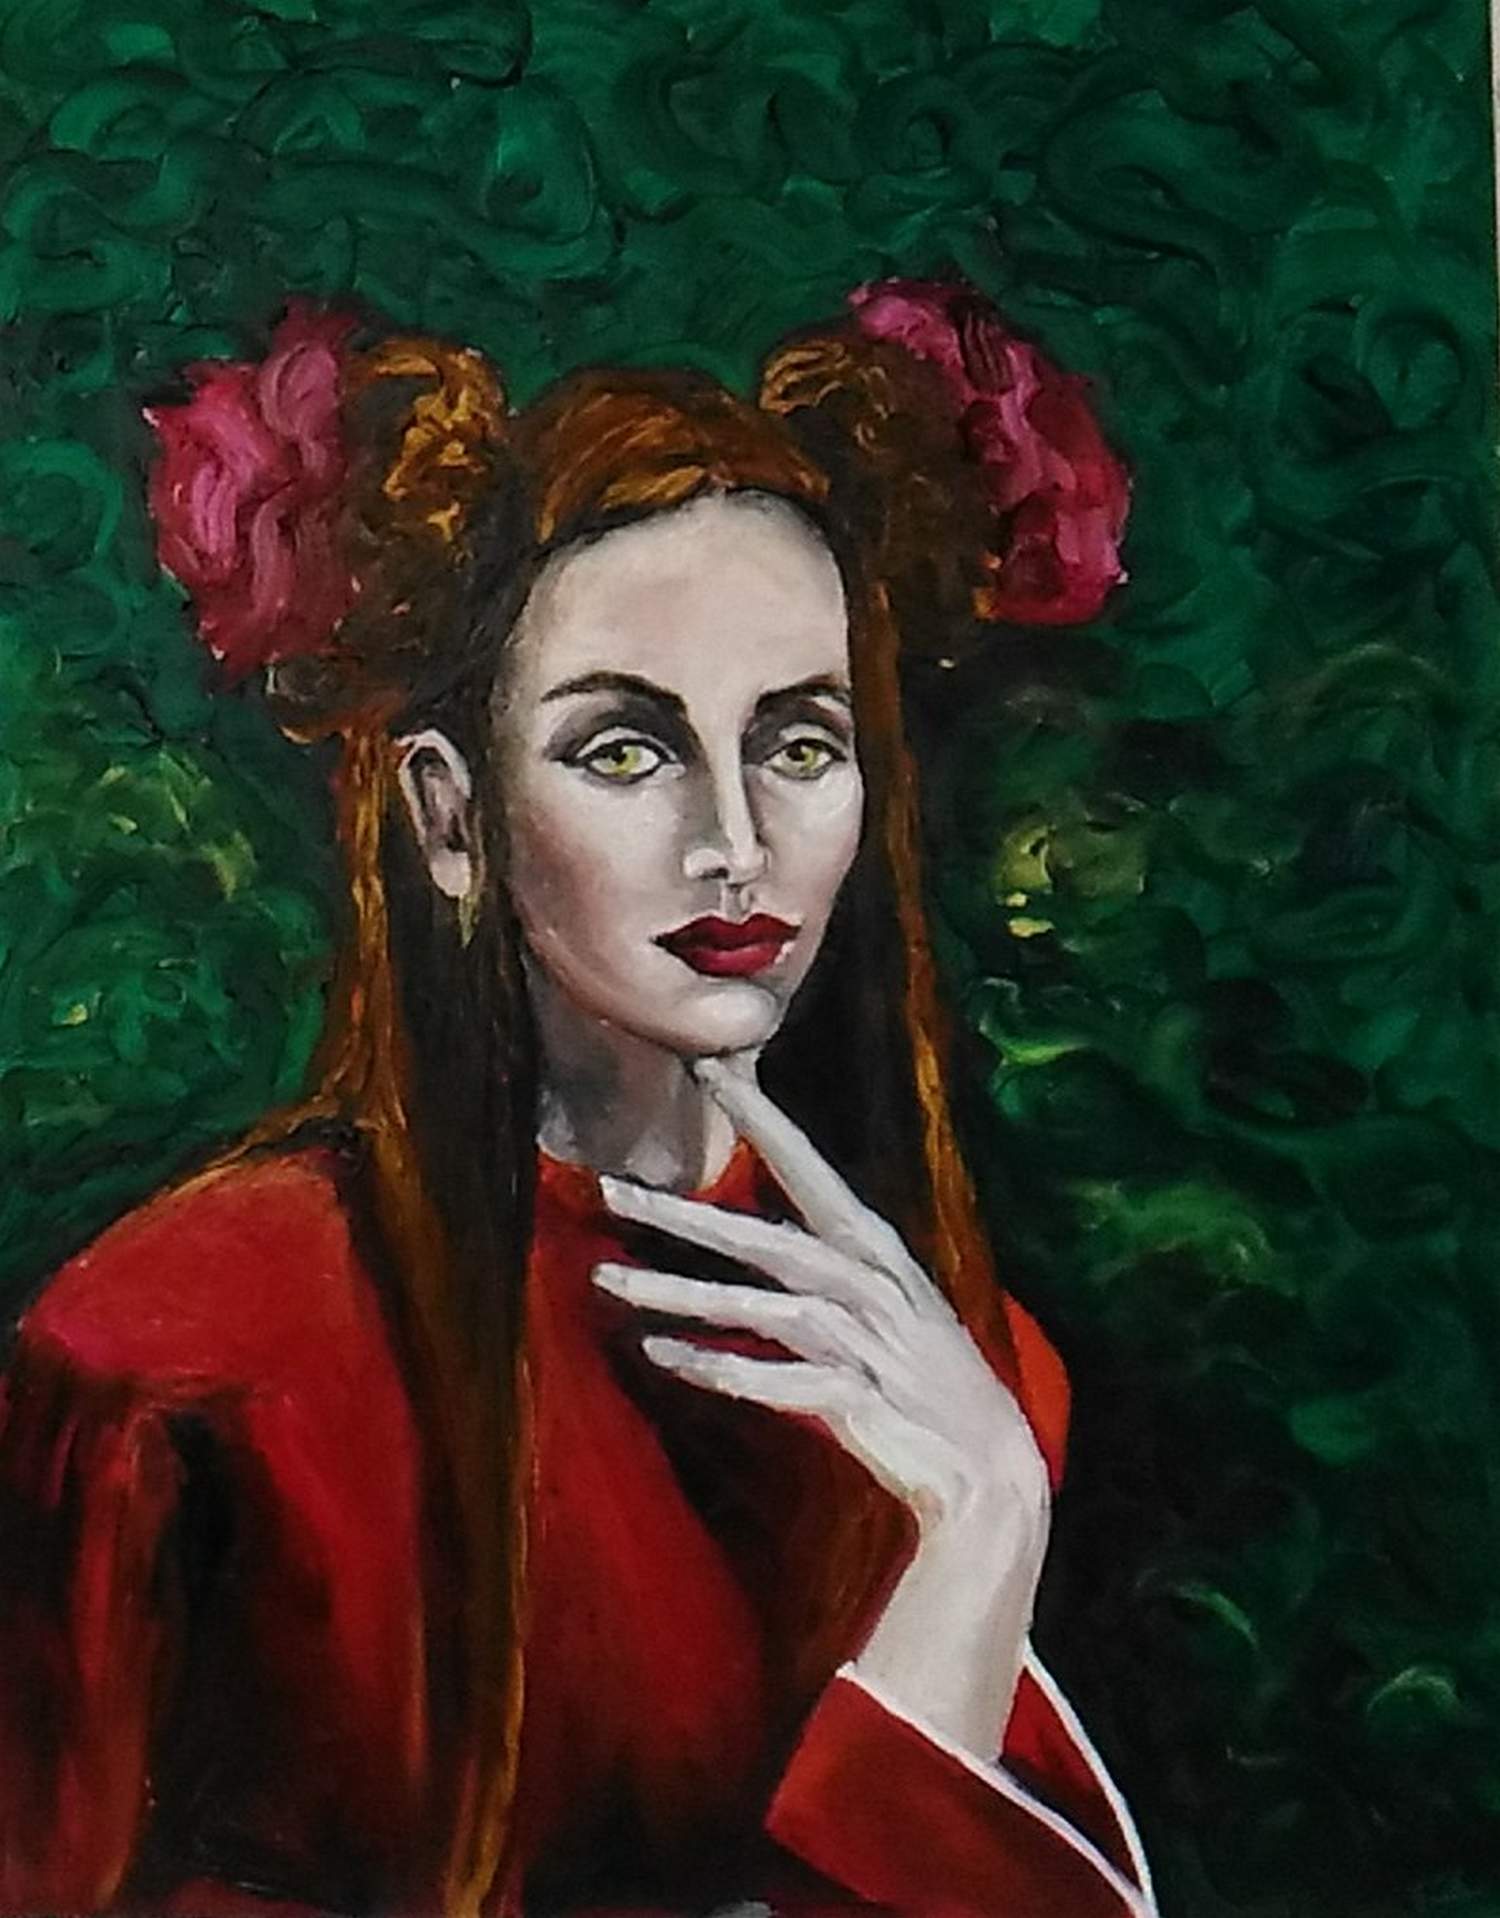 Portrait de femme en rouge,Tableaux contemporains,artiste peintre Florence
GAUTIER,oeuvre contemporaine.